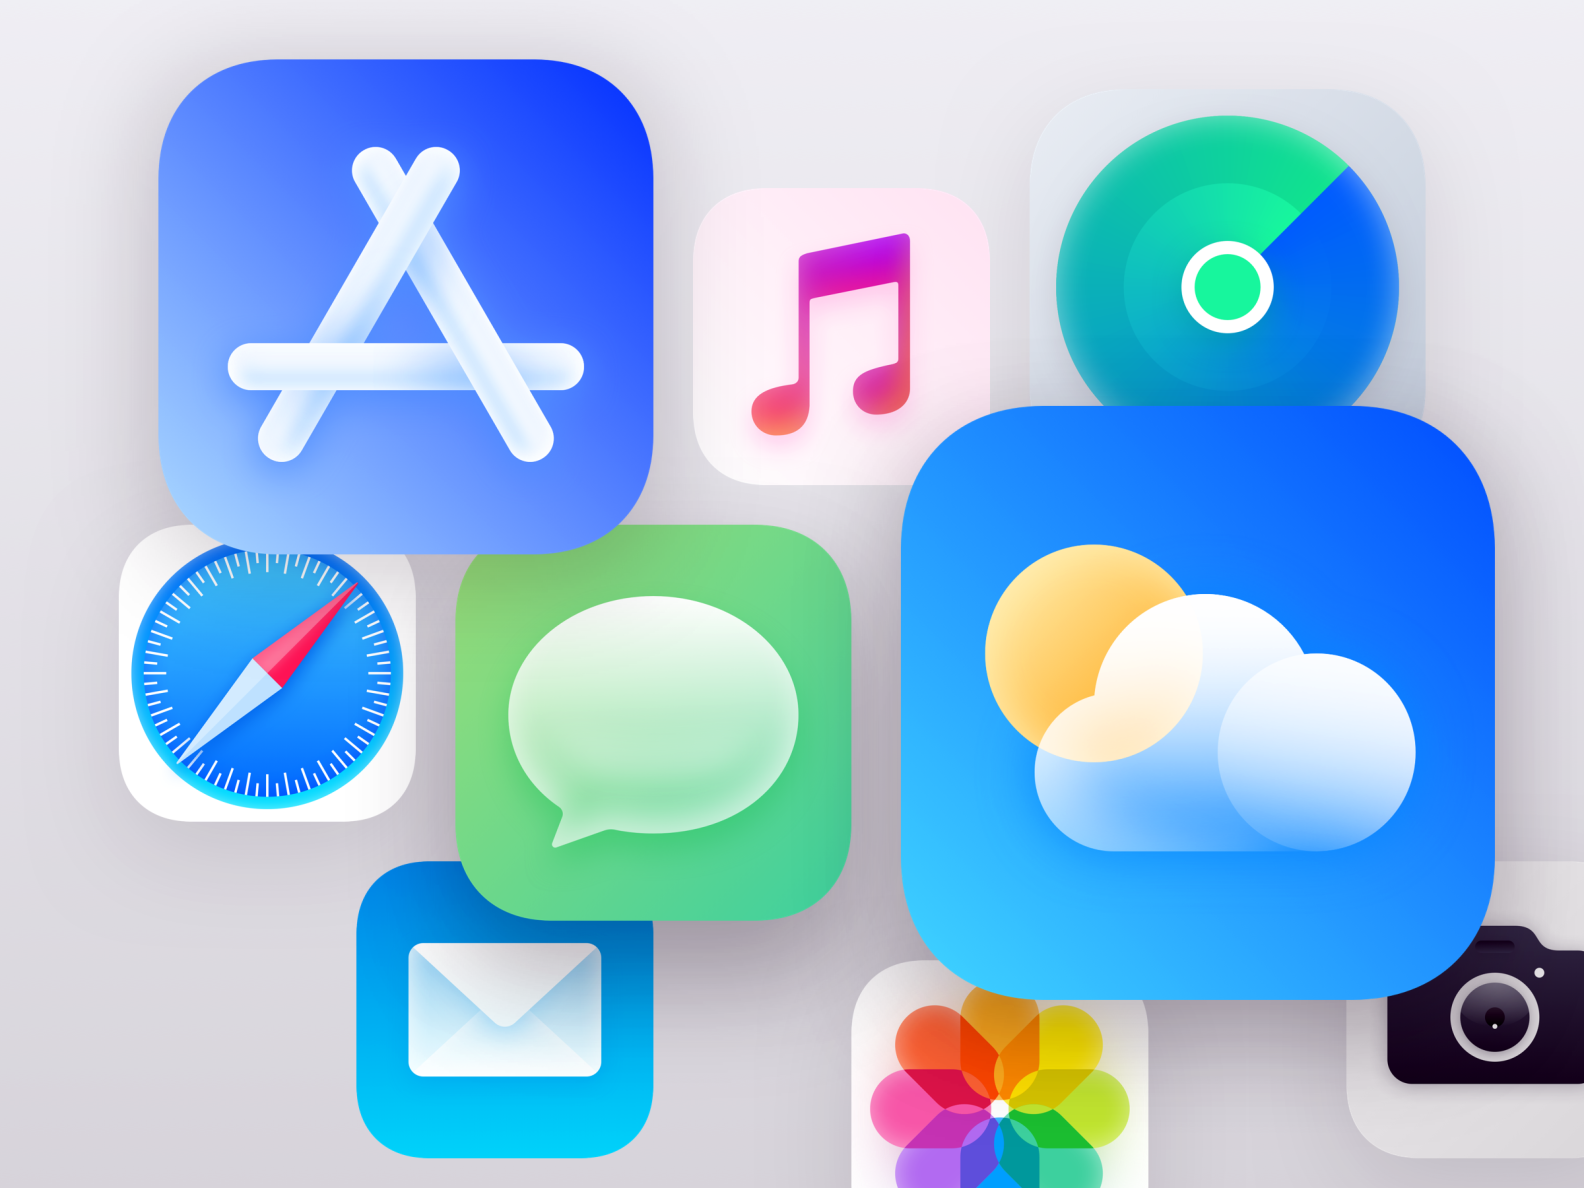 iOS14 GUI by ihatter on Dribbble